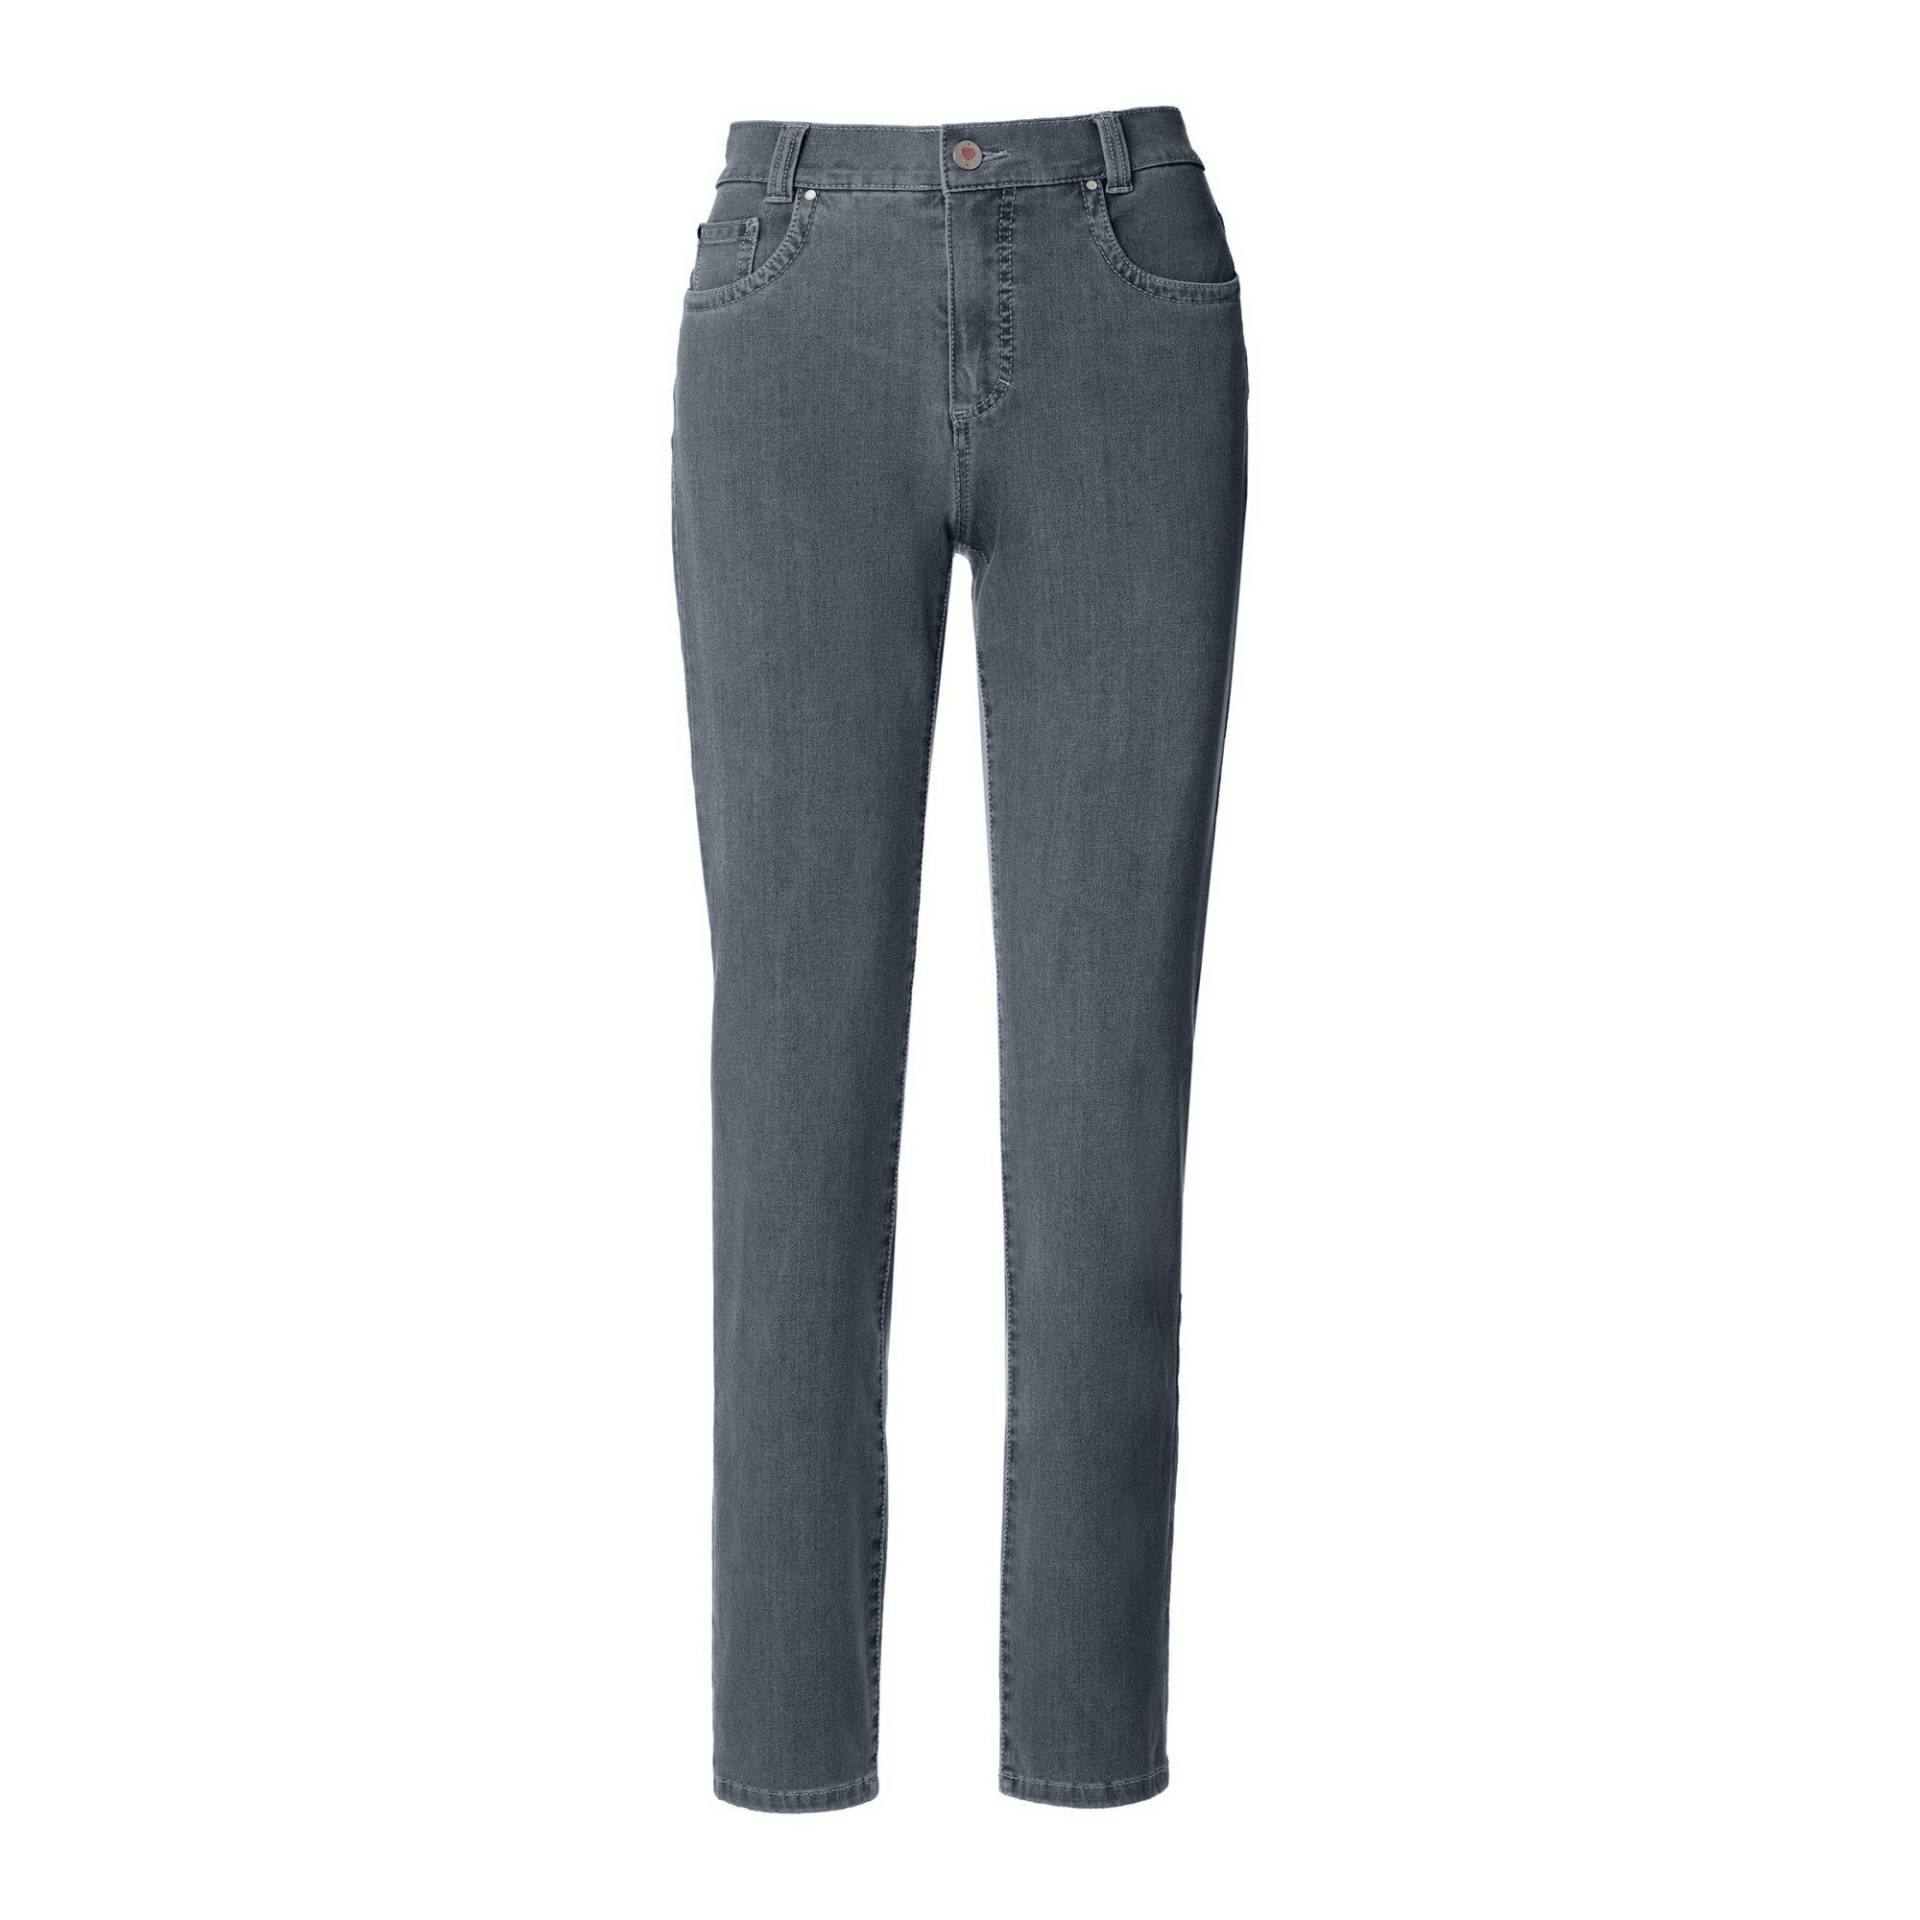 Jeans, Slim Fit Damen Blau Denim Dunkel W40 von ANNA MONTANA